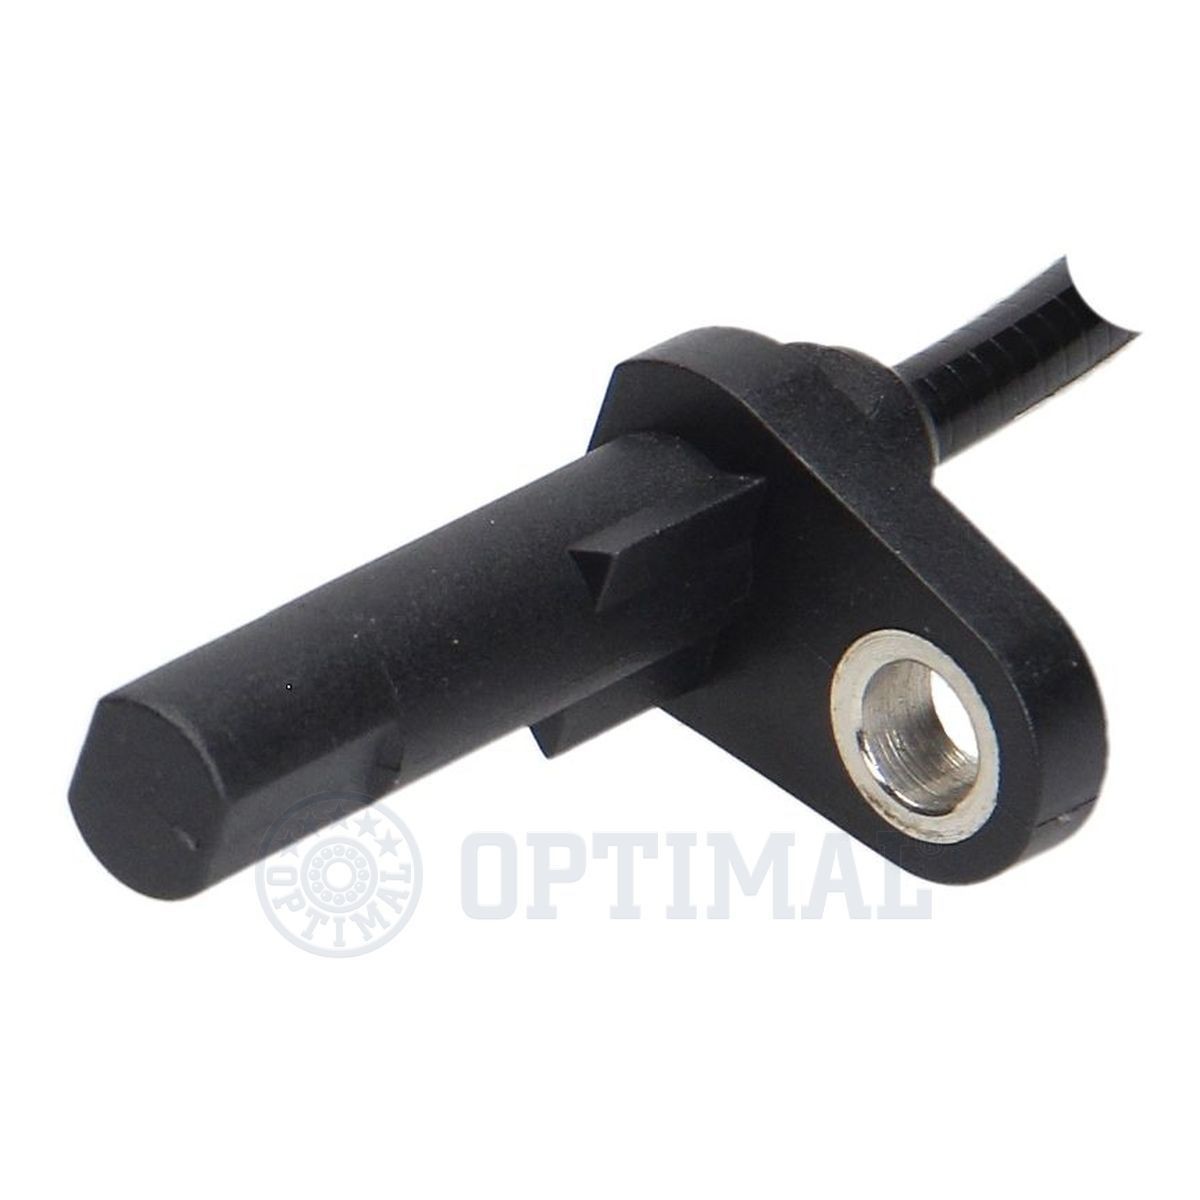 06S431 Anti lock brake sensor OPTIMAL 06-S431 review and test